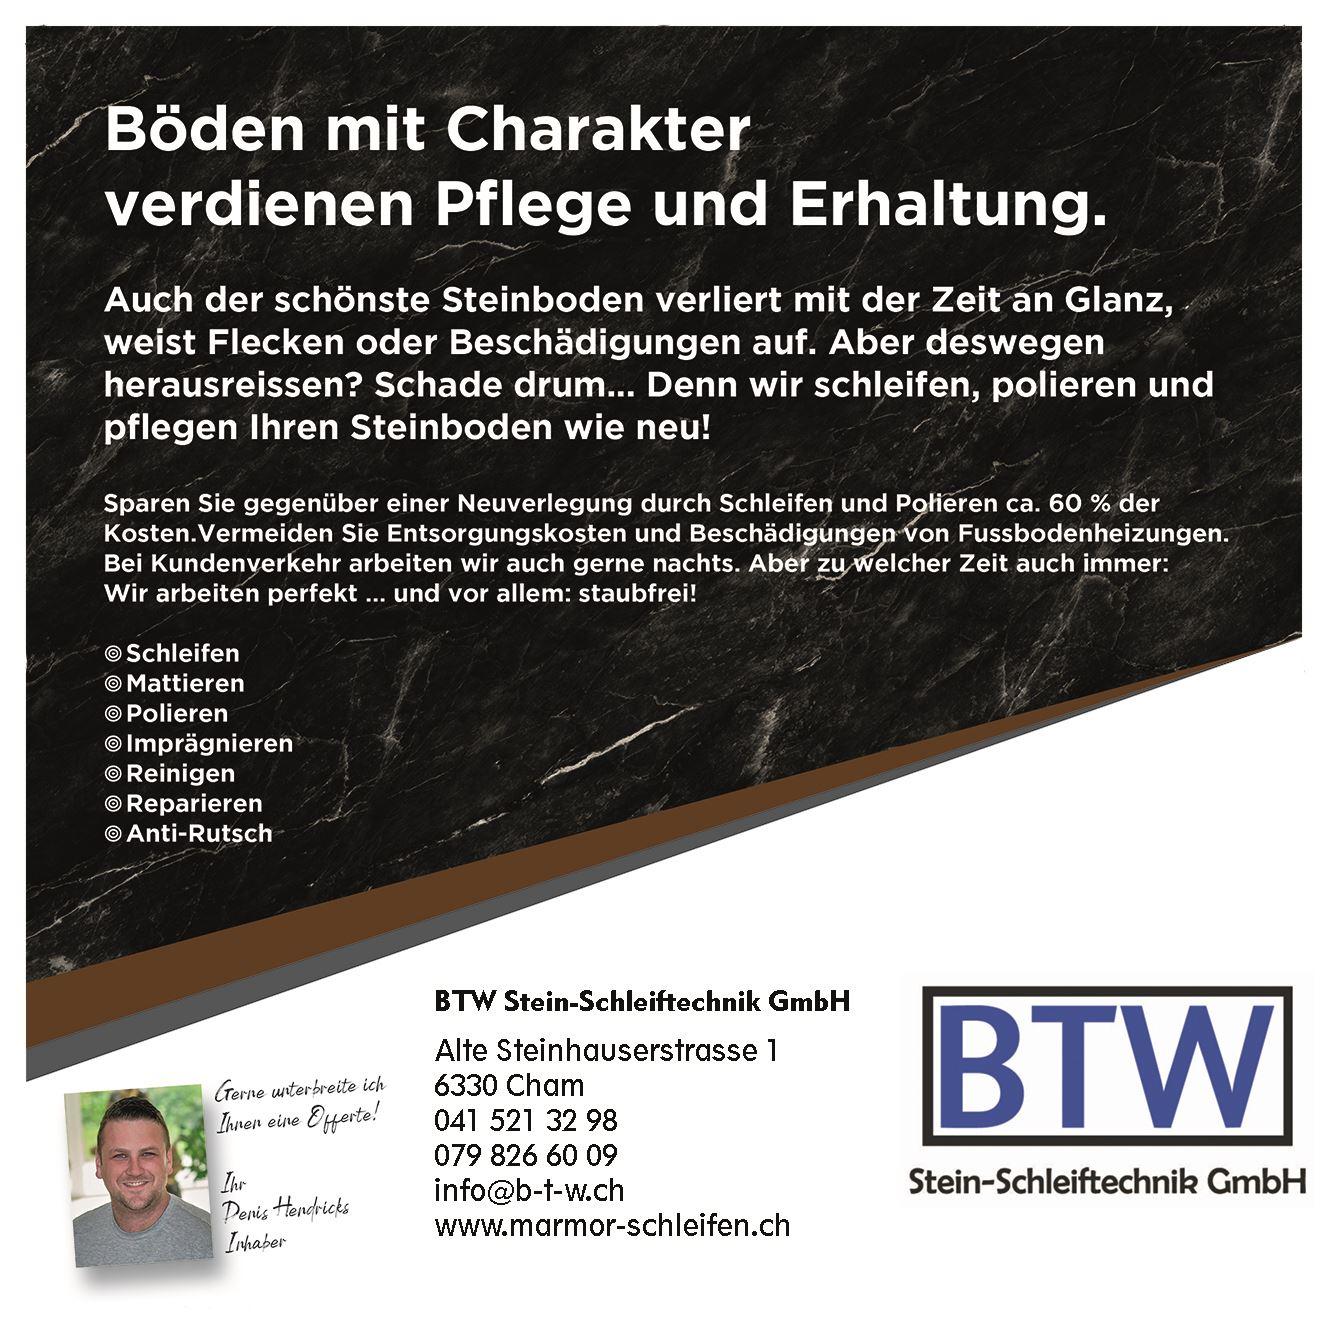 Flyer-BTW Stein-Schleiftechnik seite 1 Marmor-schleifen und info@b-t-w.ch